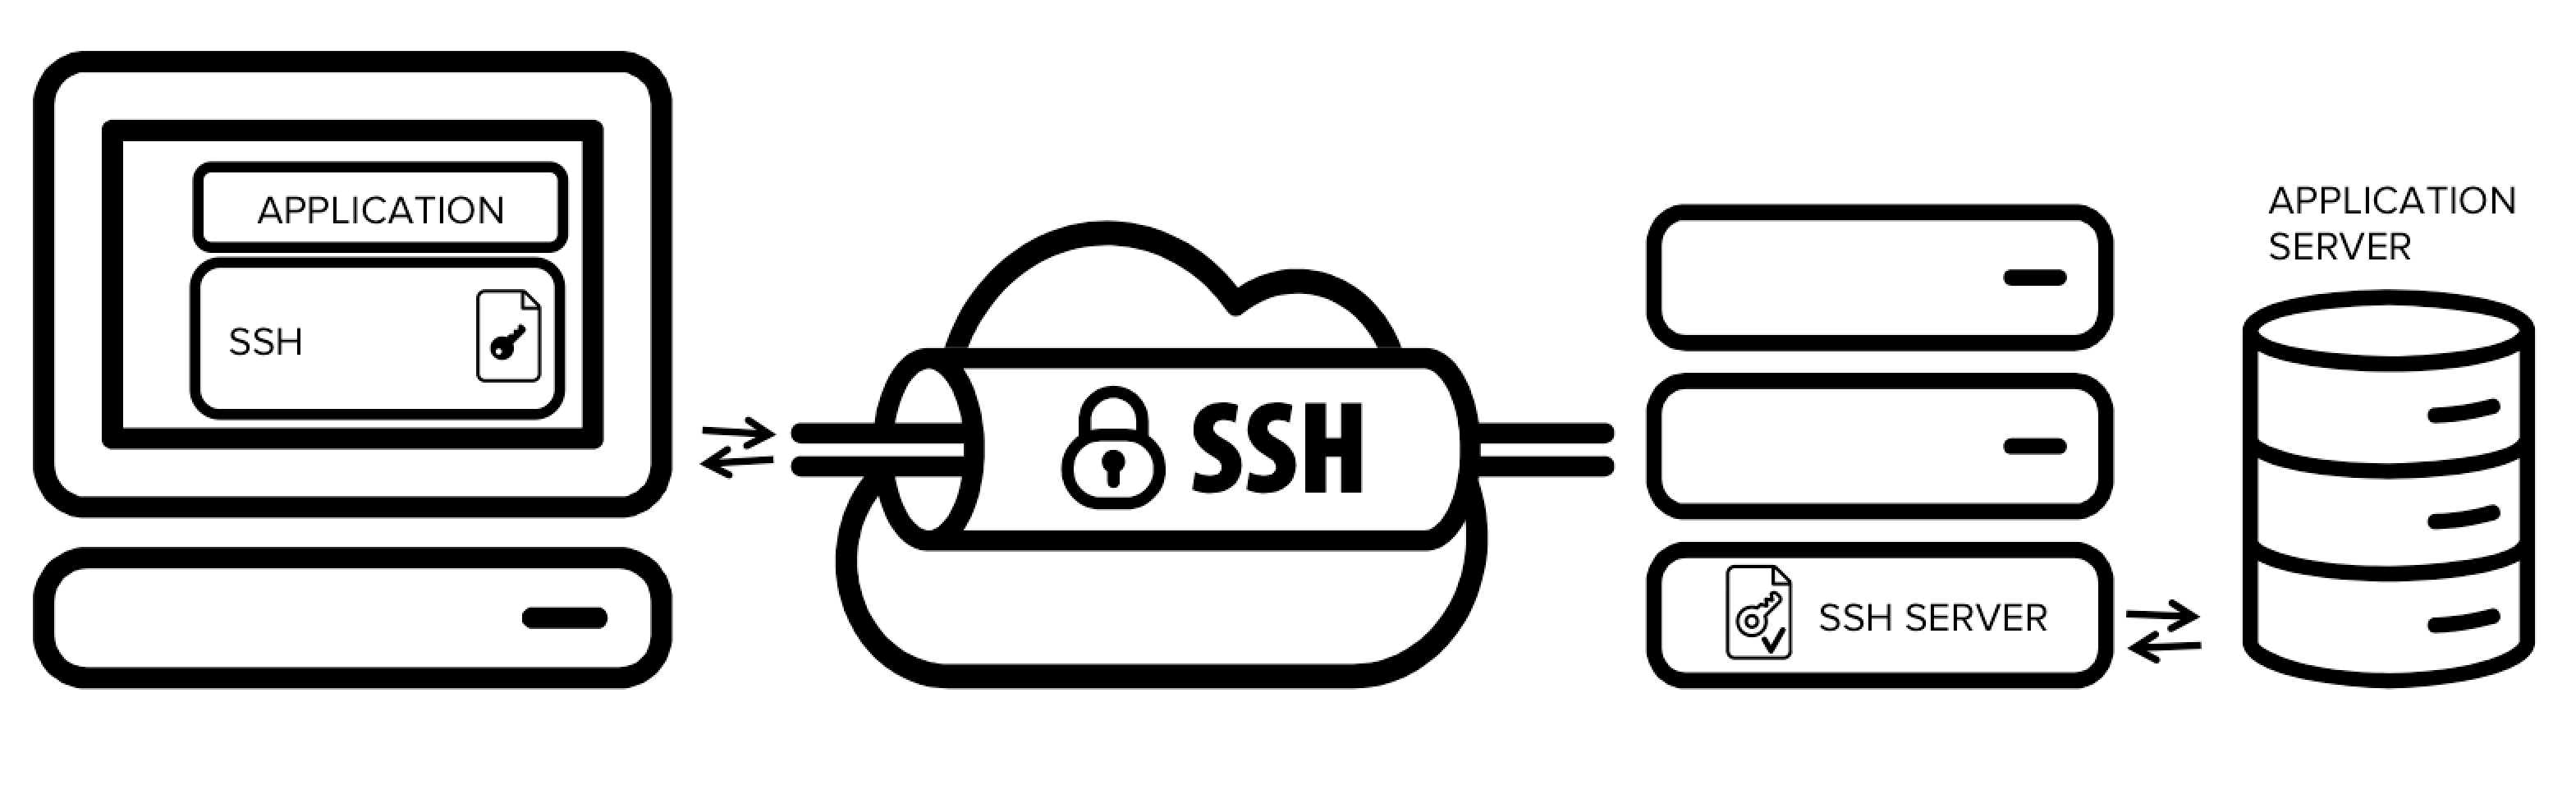 ssh-tunneling Secure Shell (SSH)và những vấn đề liên quan